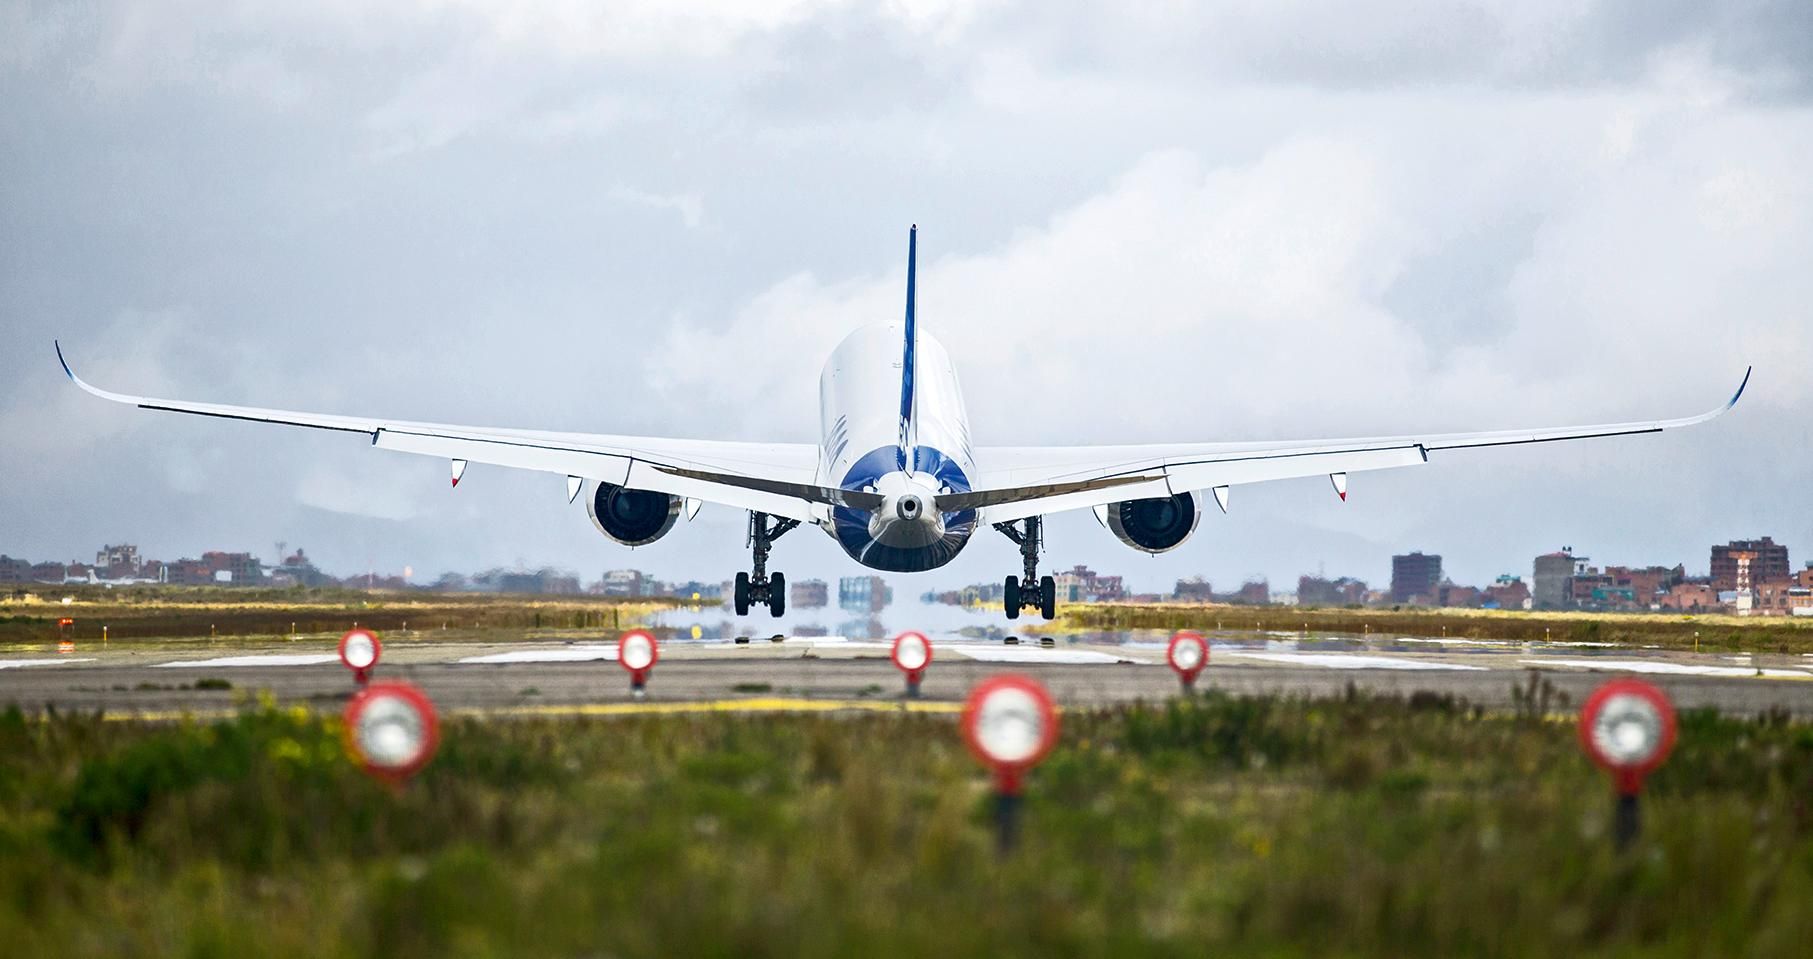 A350 landing